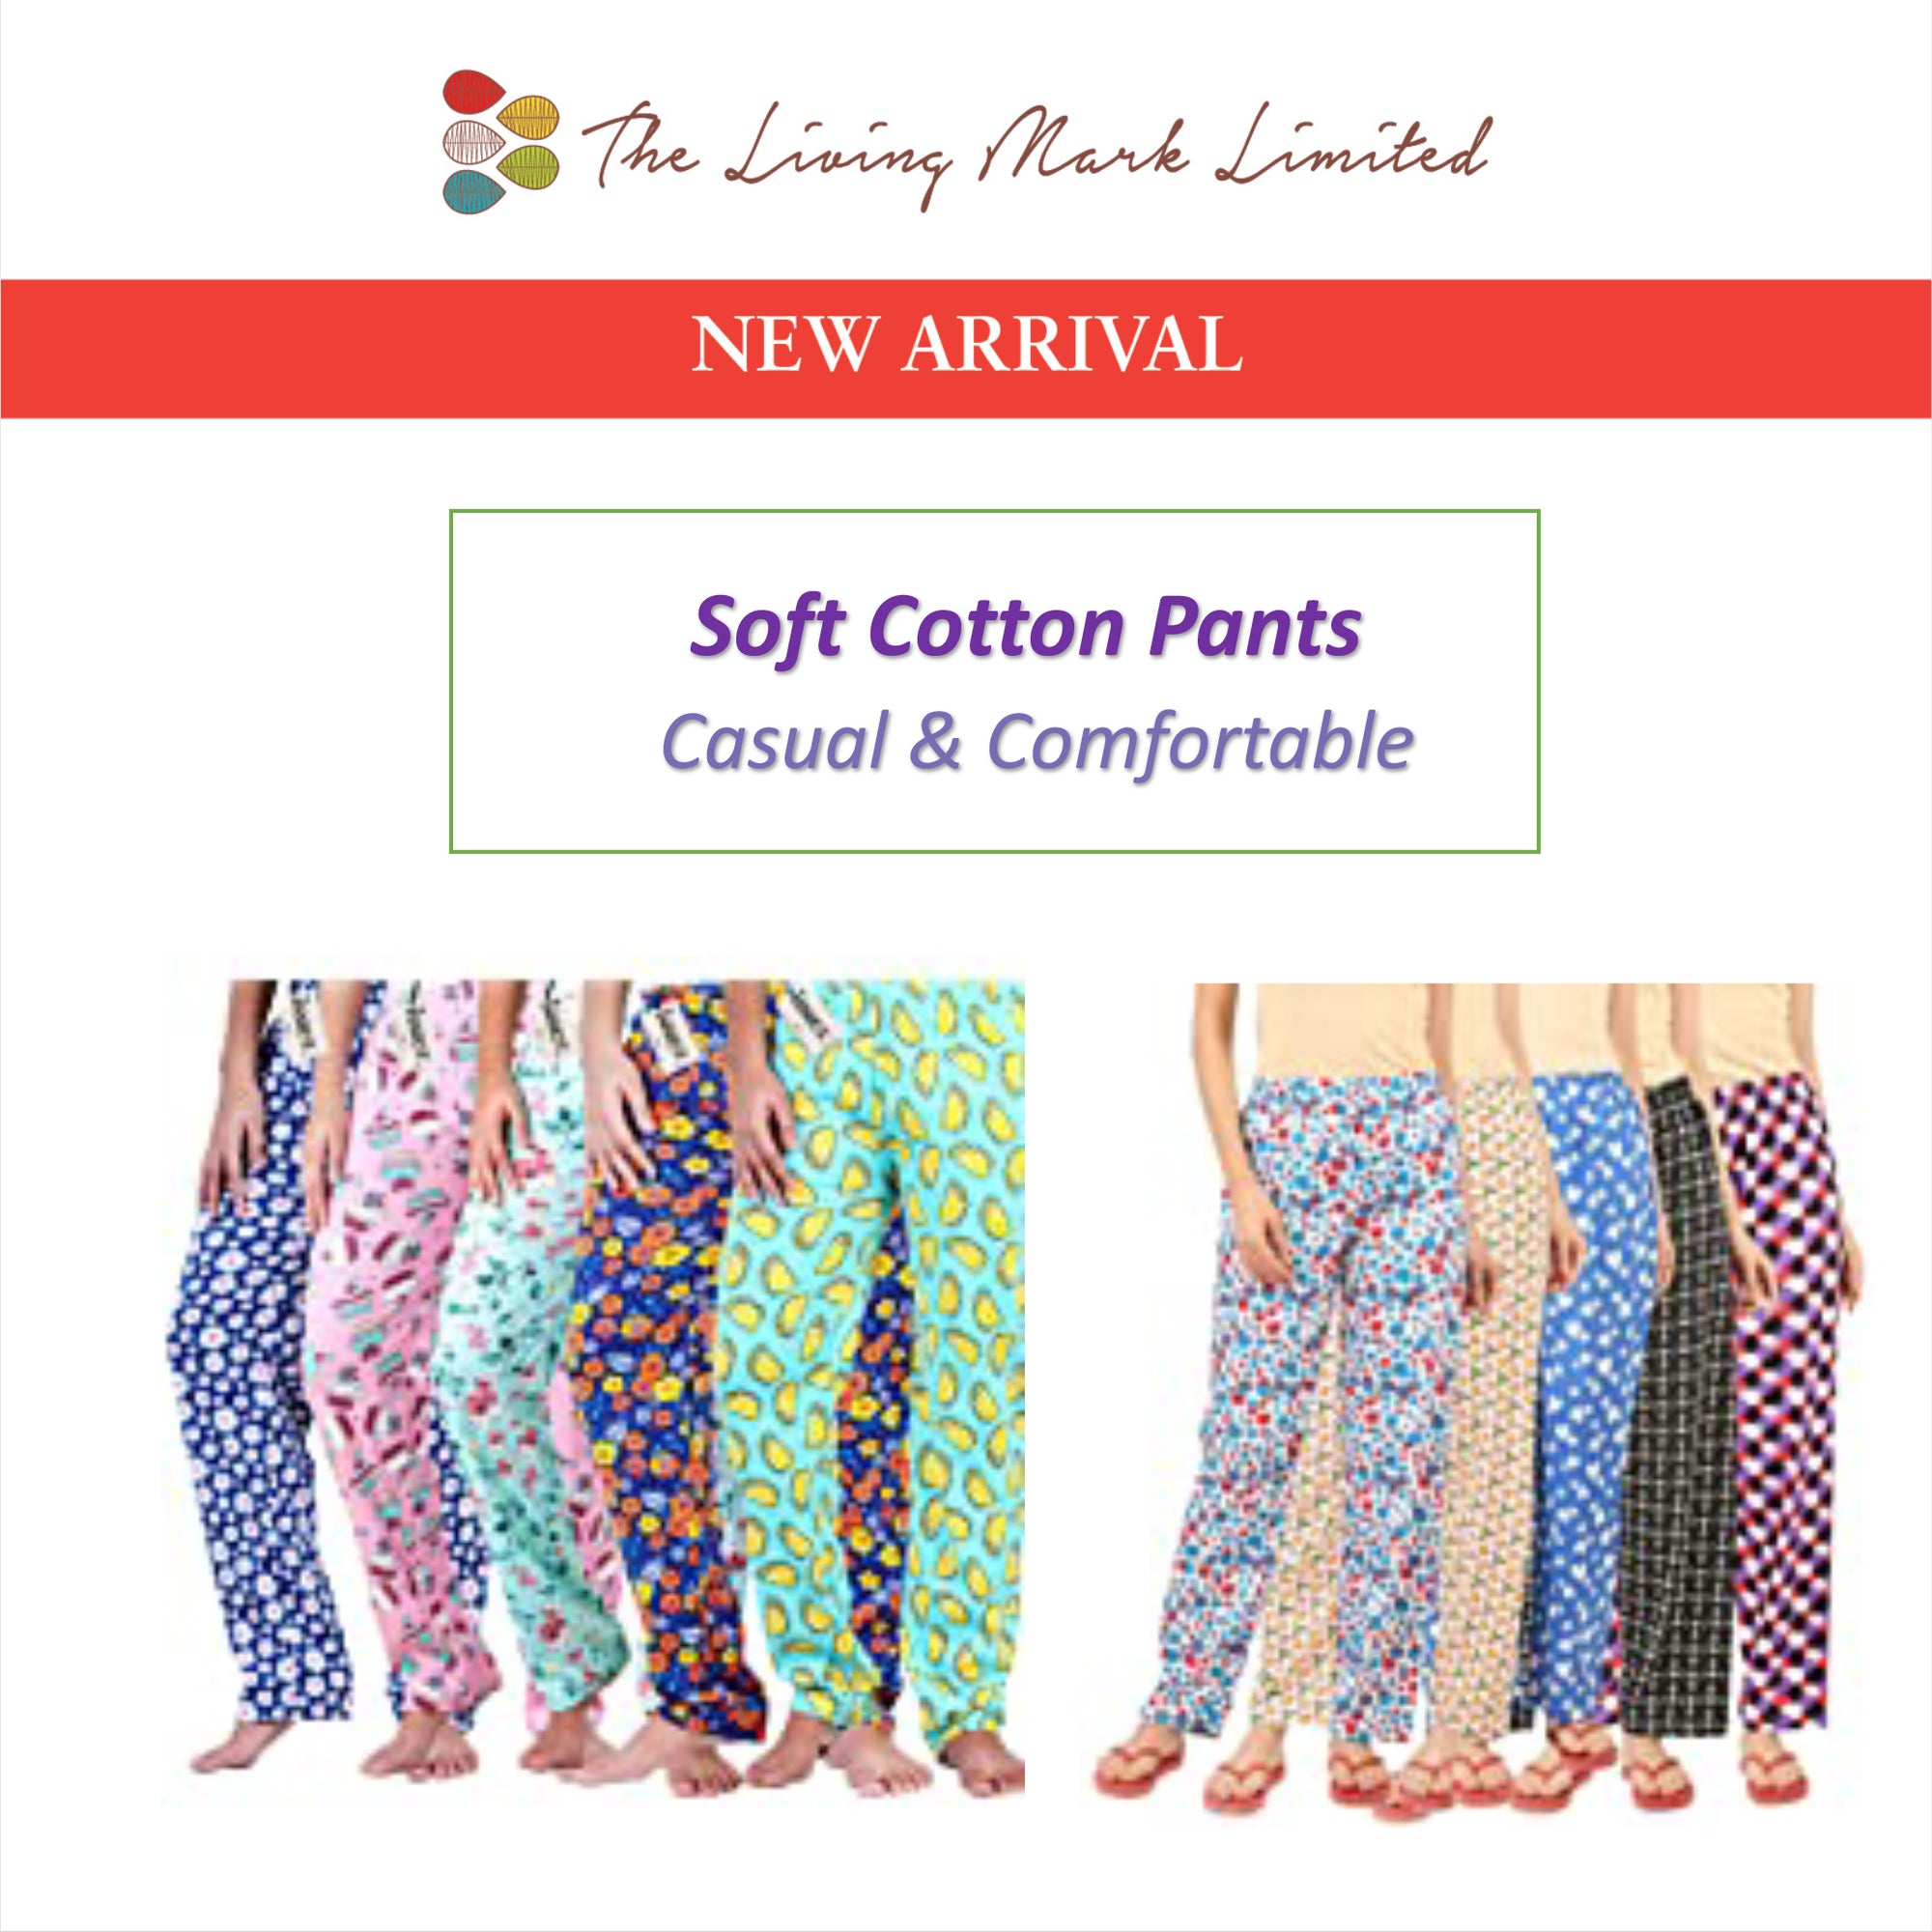 Cotton Pants